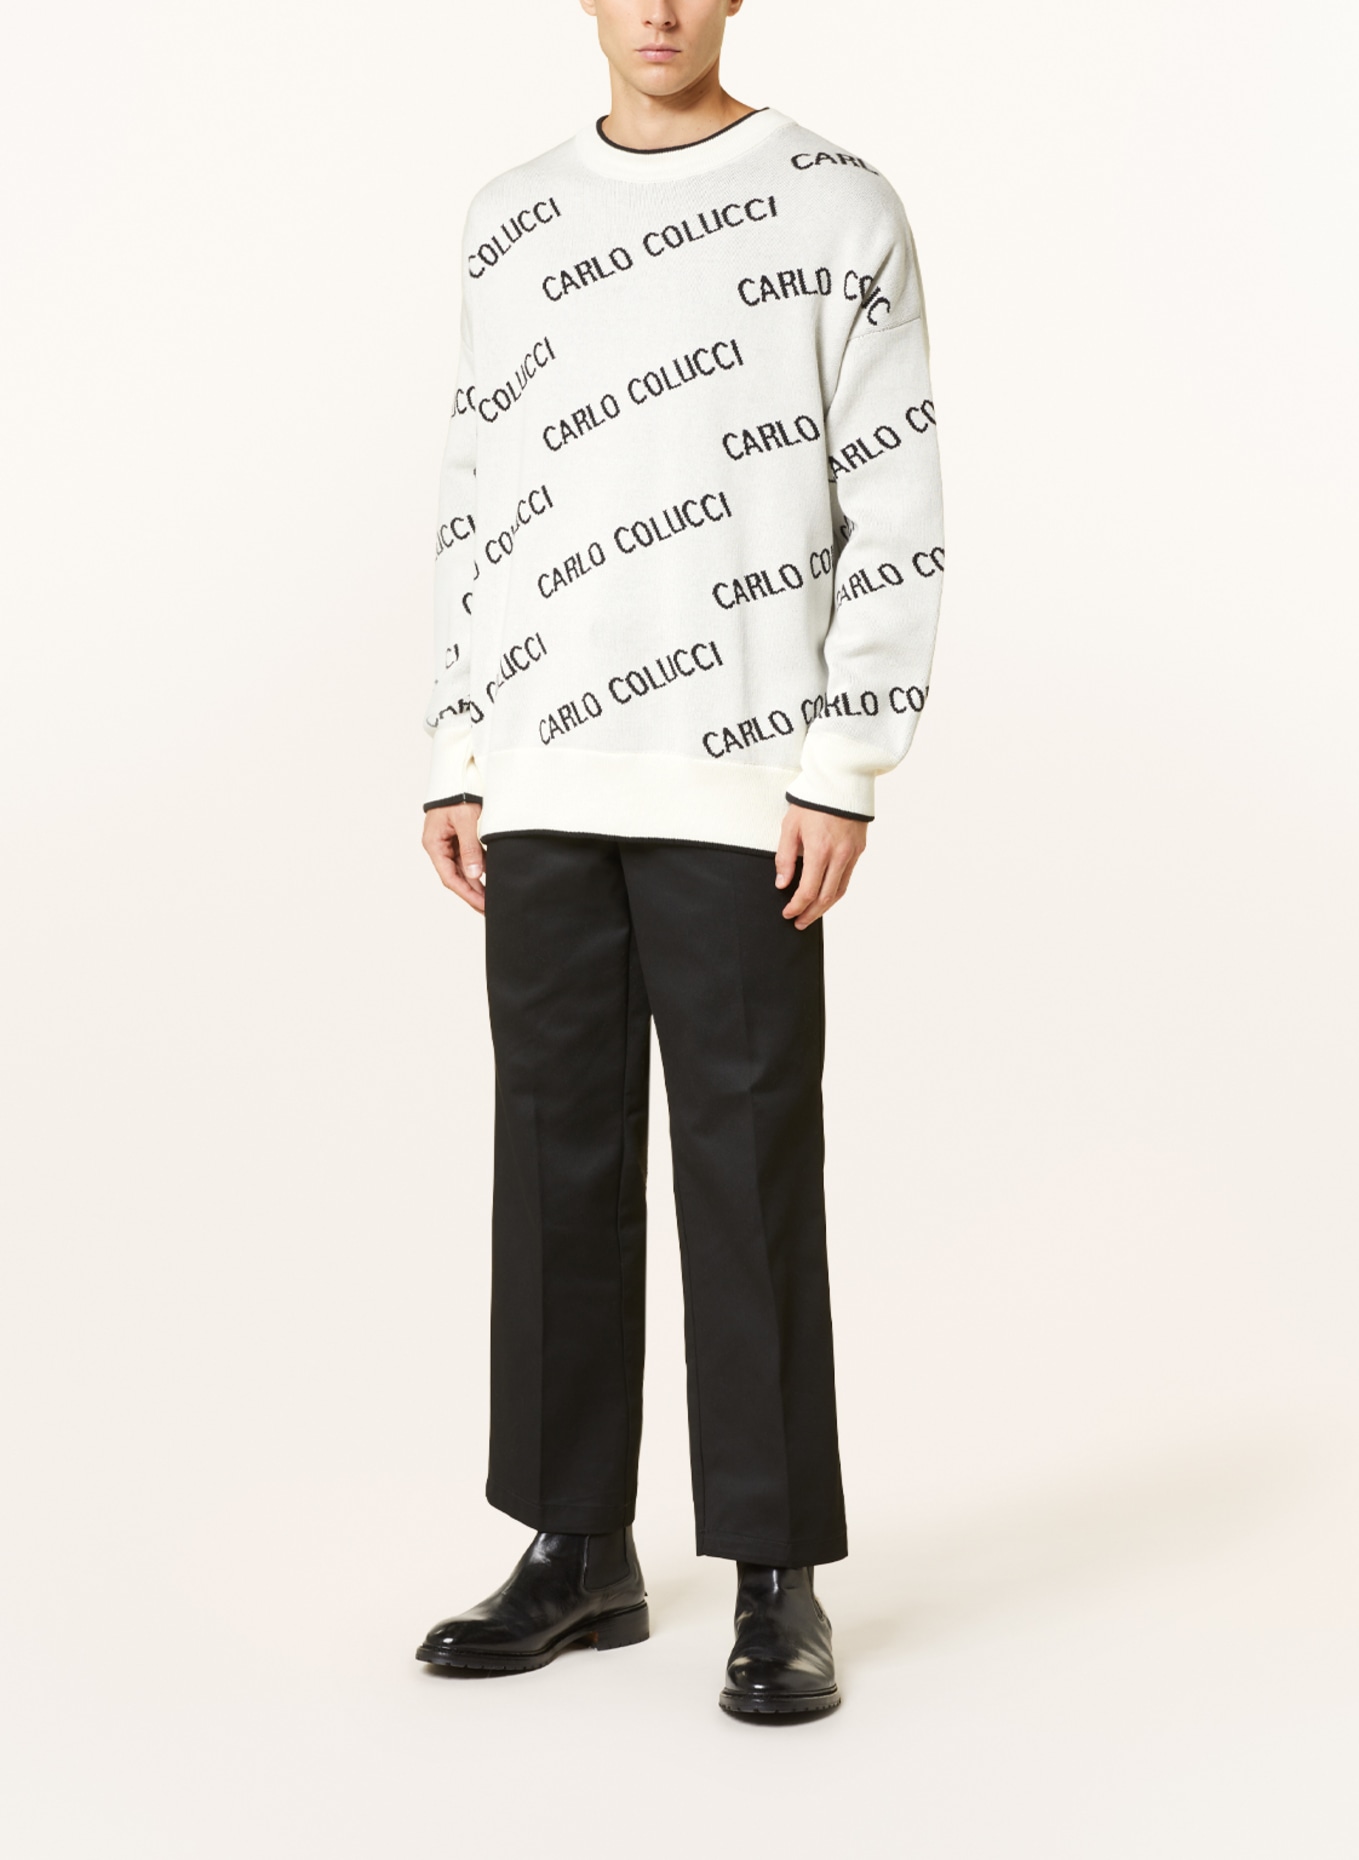 CARLO COLUCCI Sweater, Color: CREAM/ BLACK (Image 2)